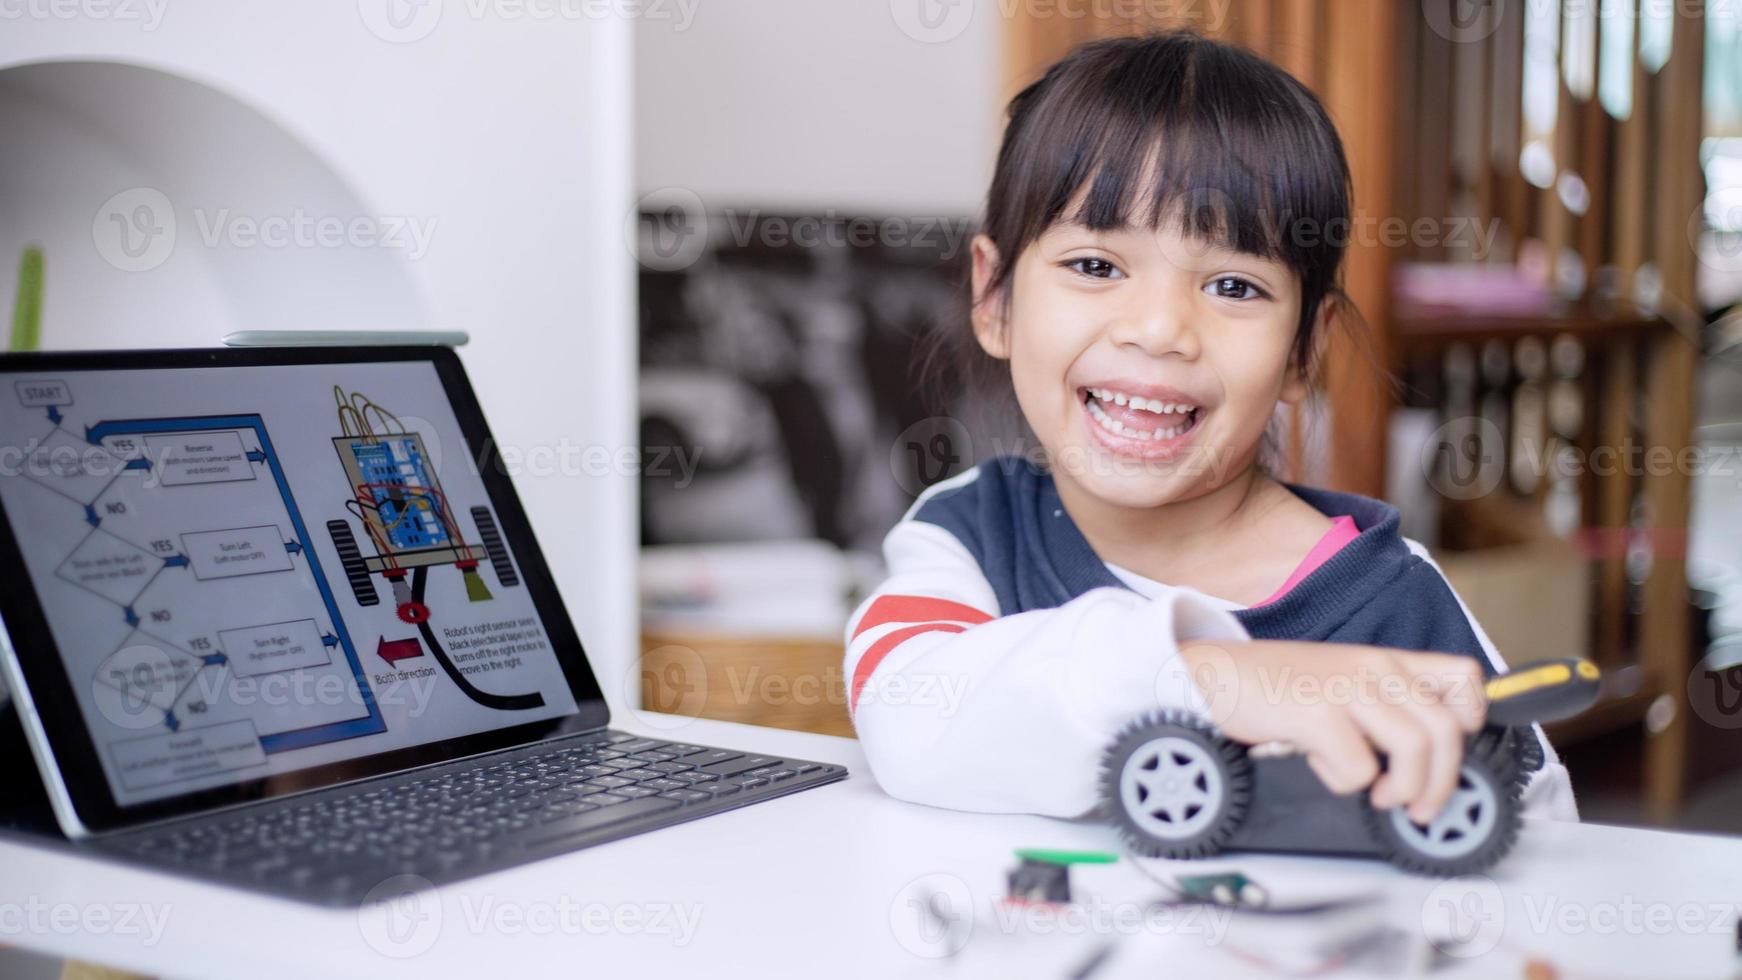 los estudiantes de asia aprenden en casa a codificar autos robot y cables de tableros electrónicos en tallo, vapor, ingeniería matemática, ciencia, tecnología, código de computadora en robótica para el concepto de niños foto